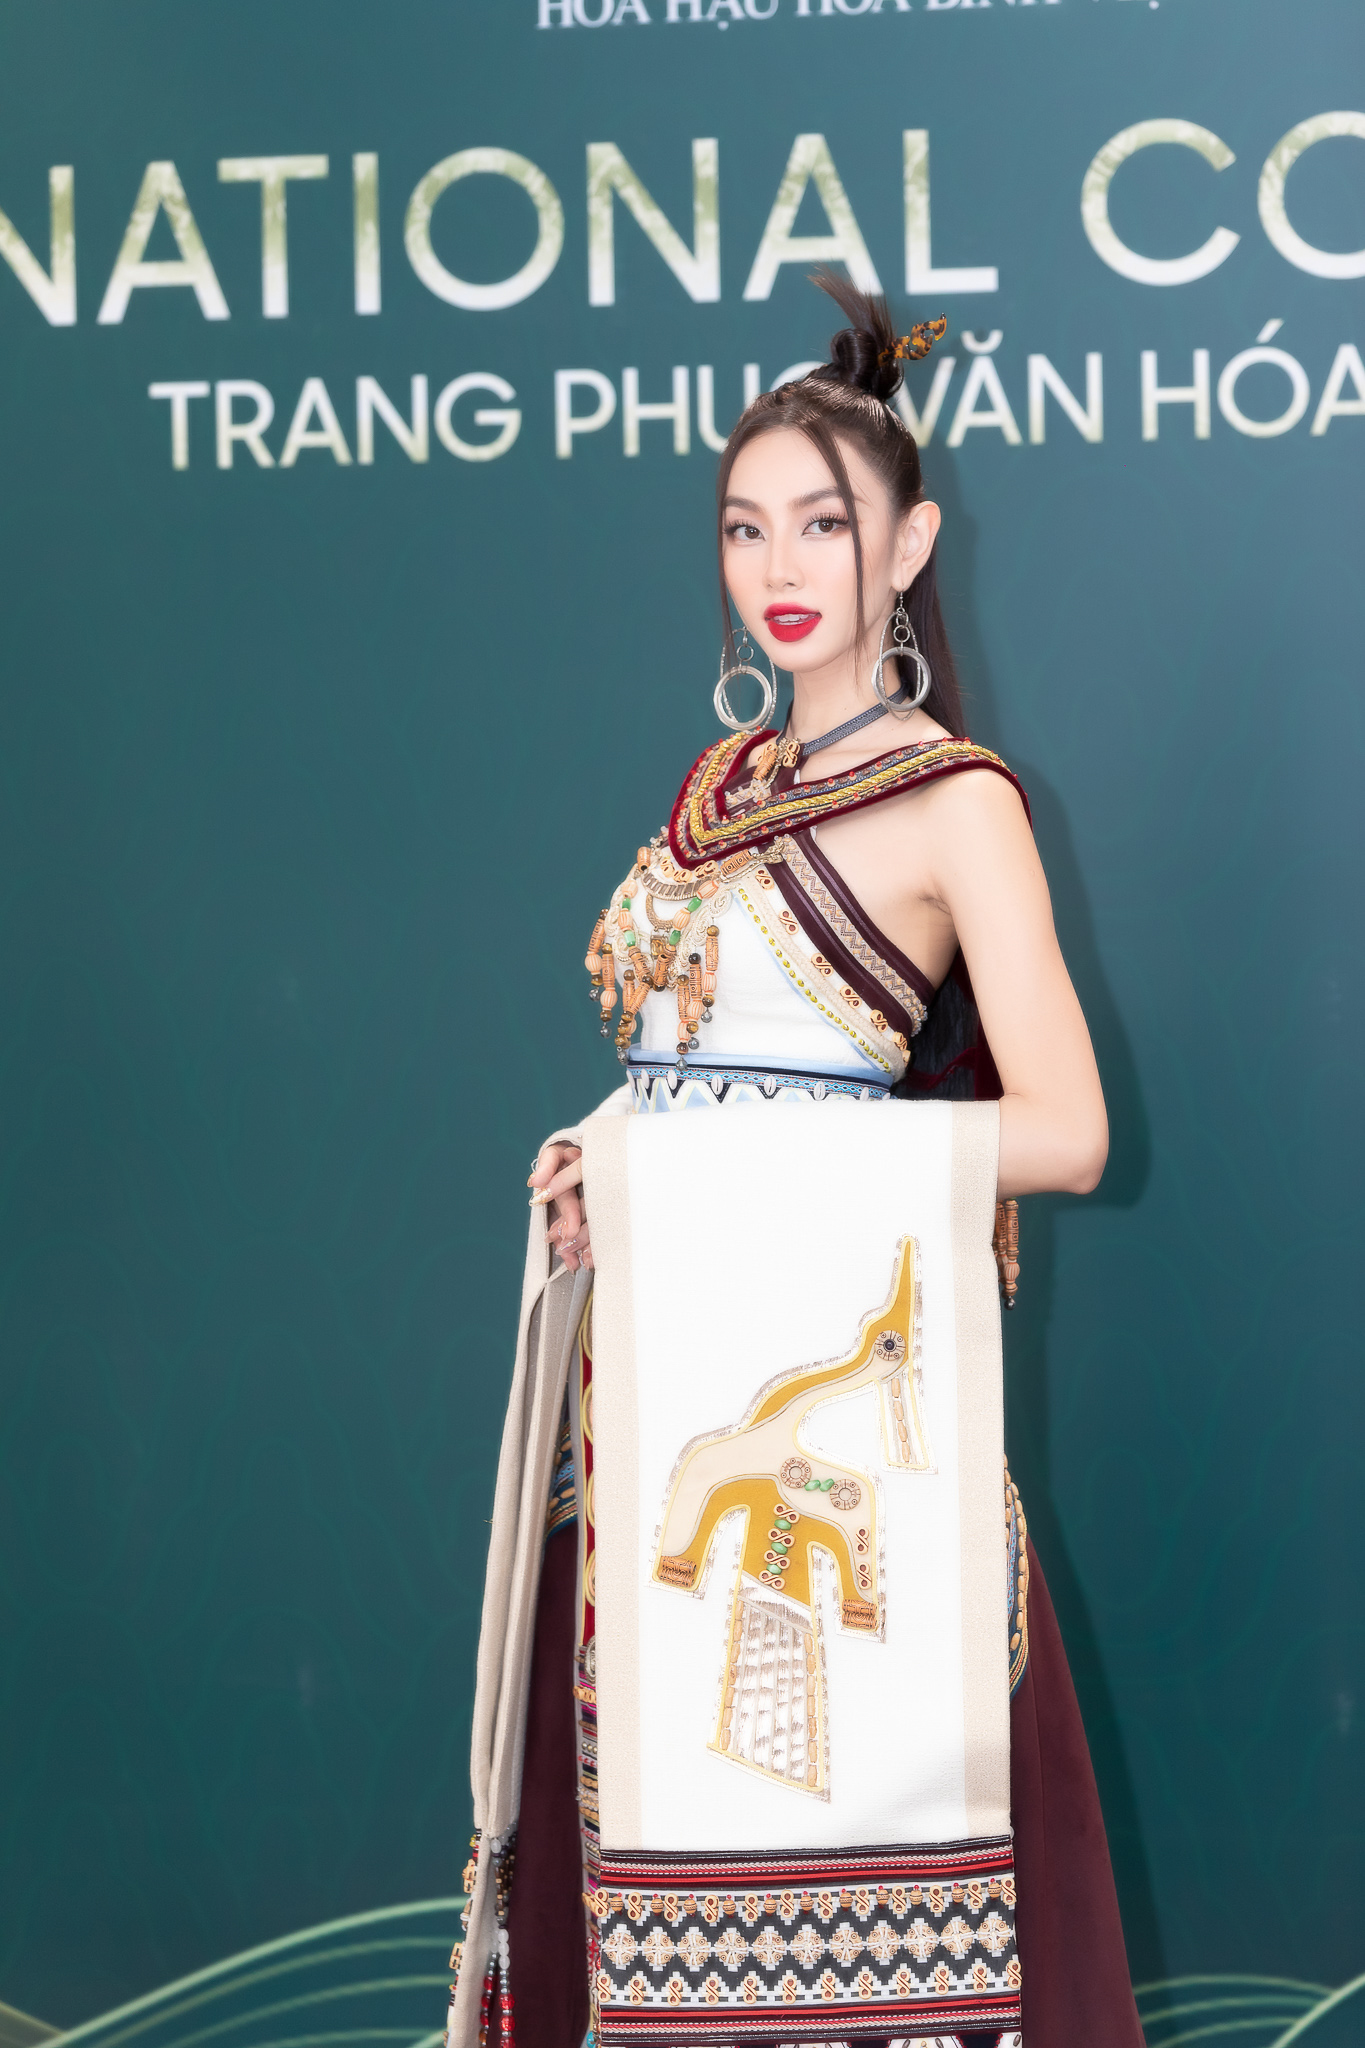 Hoa hậu Thùy Tiên - Mai Phương cùng dàn mỹ nhân quyền lực trên thảm đỏ Hoa hậu Hòa bình Việt Nam  - Ảnh 1.